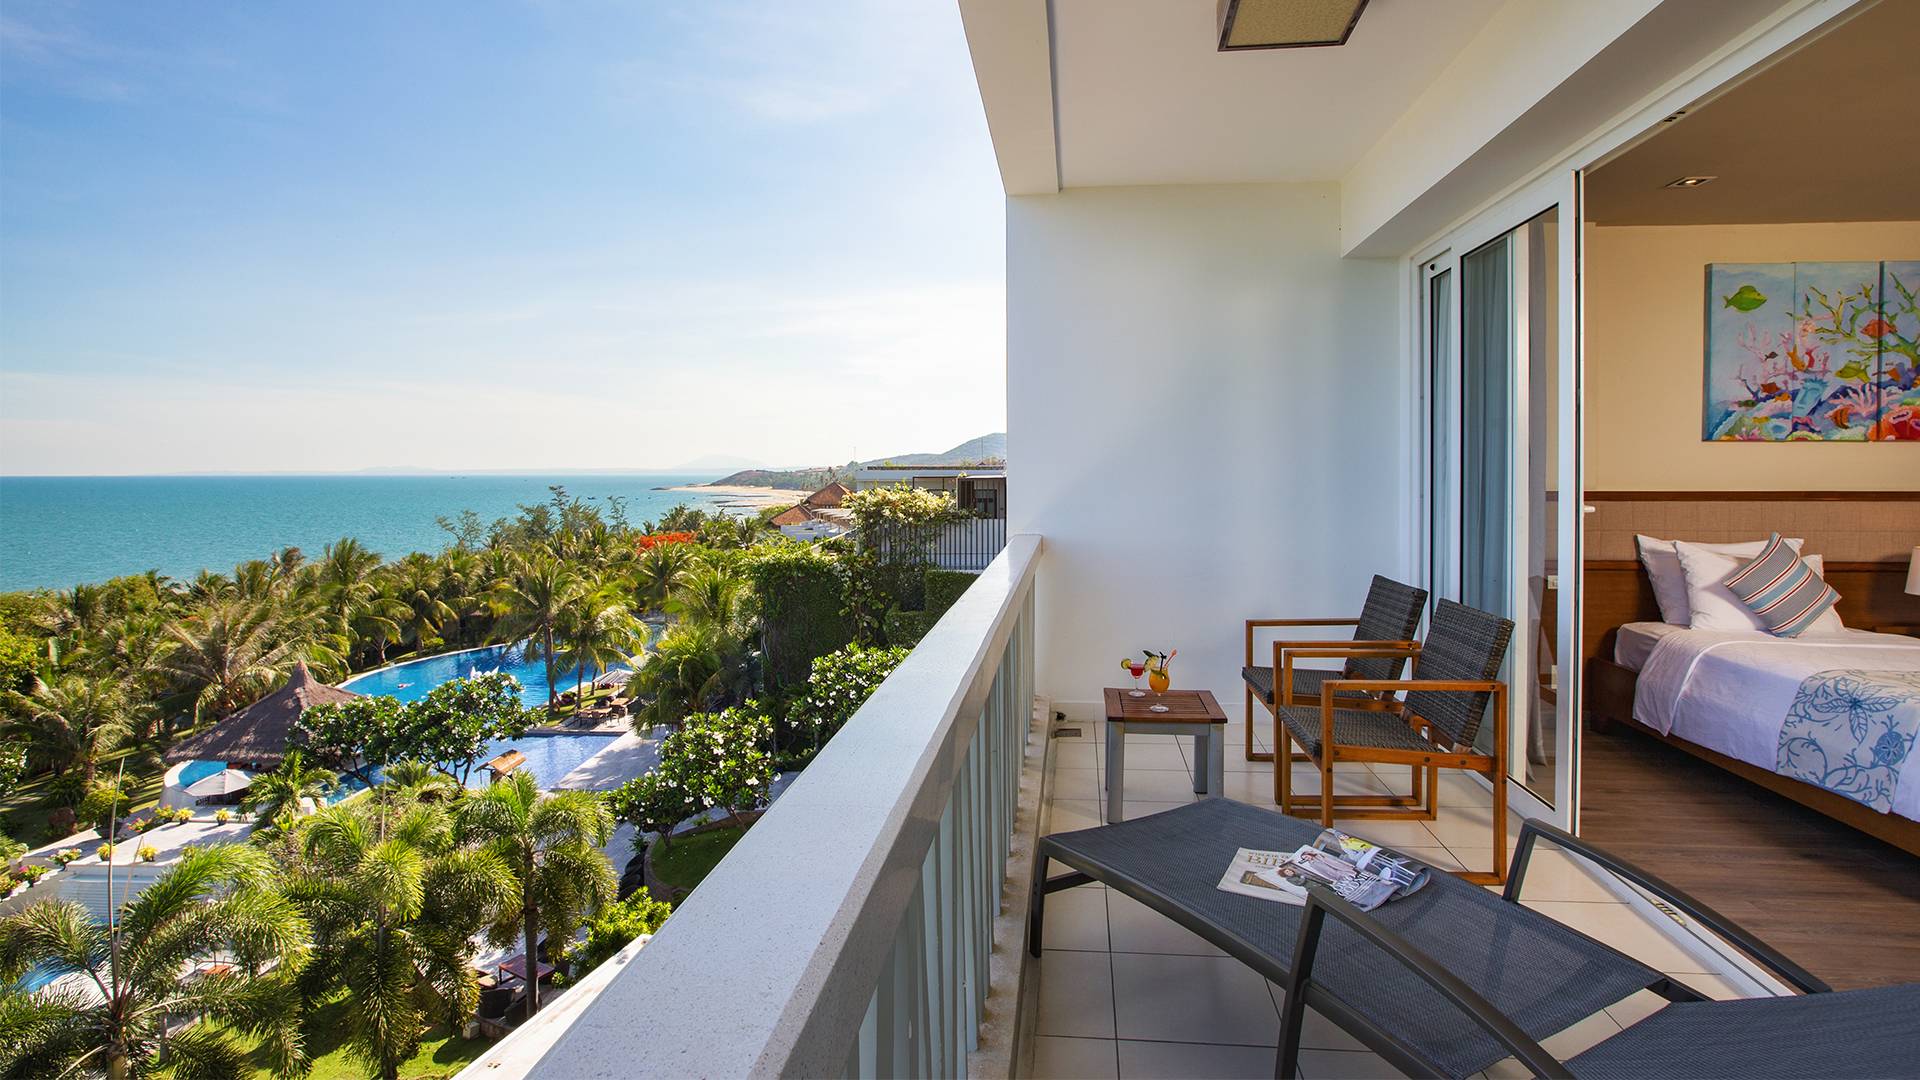 The Cliff Resort & Residence Spa -khu nghỉ dưỡng thơ mộng bên biển 